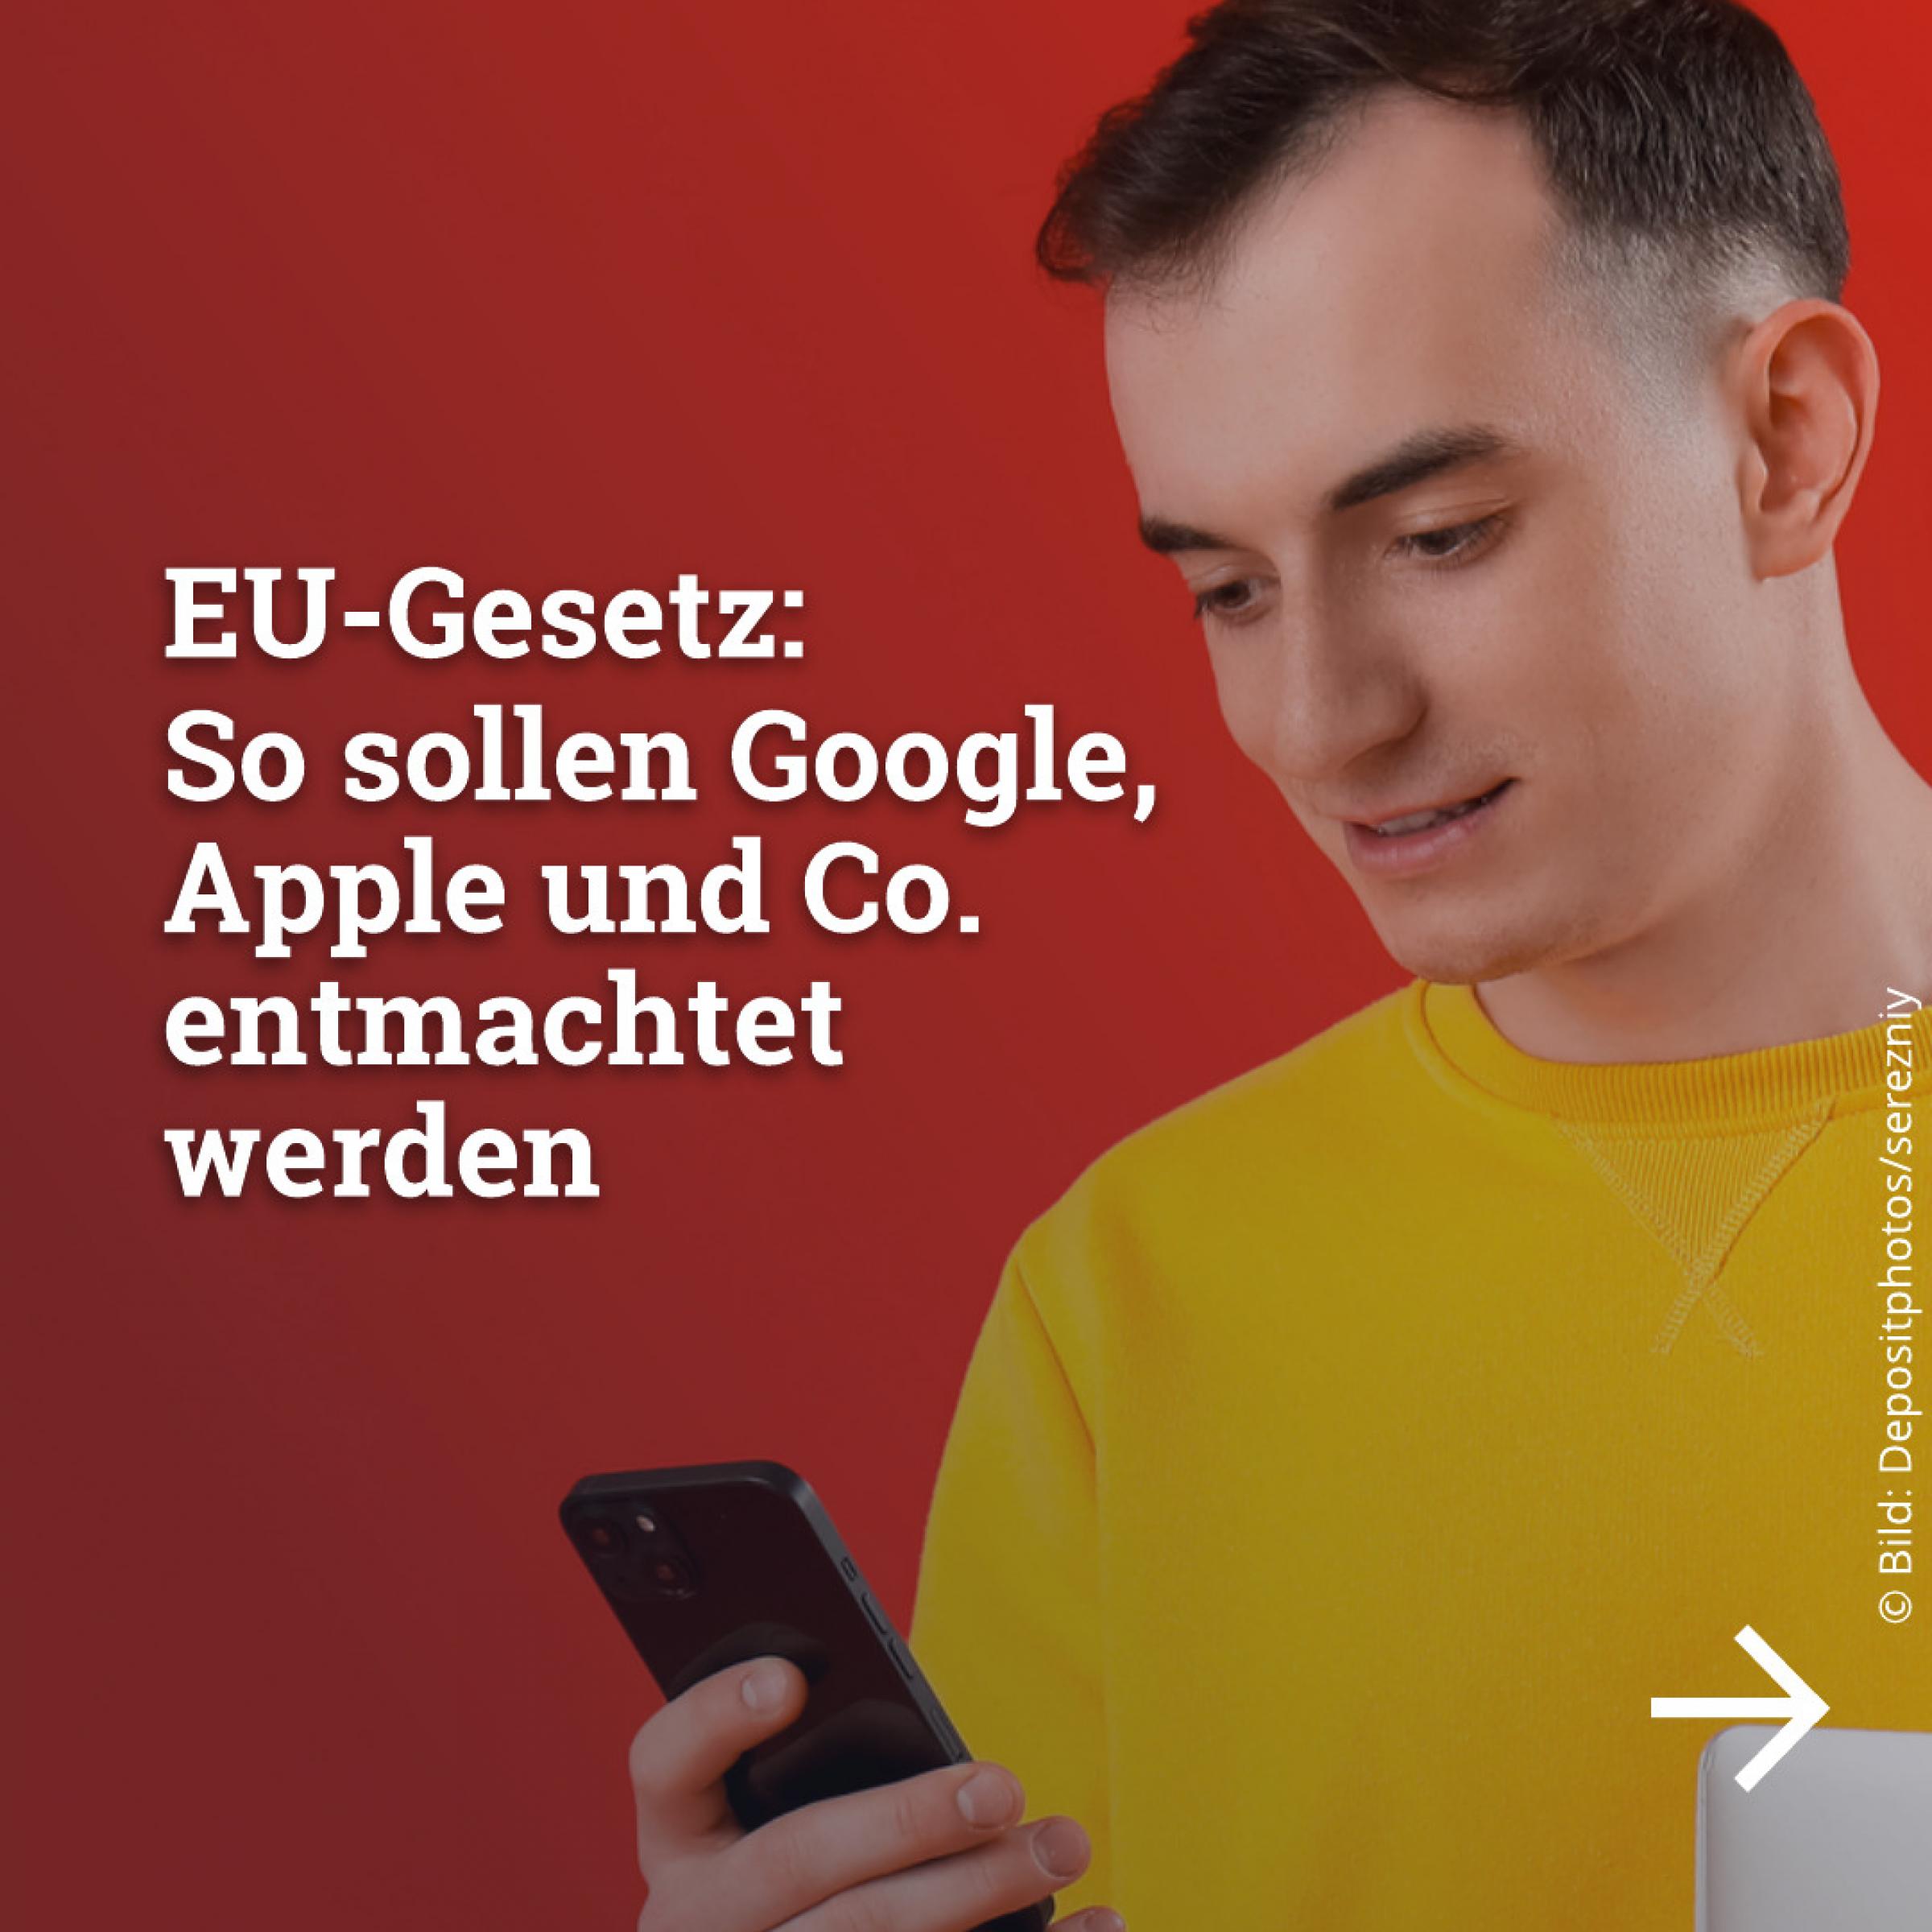 EU-Gesetz: So sollen Google, Apple und Co. entmachtet werden